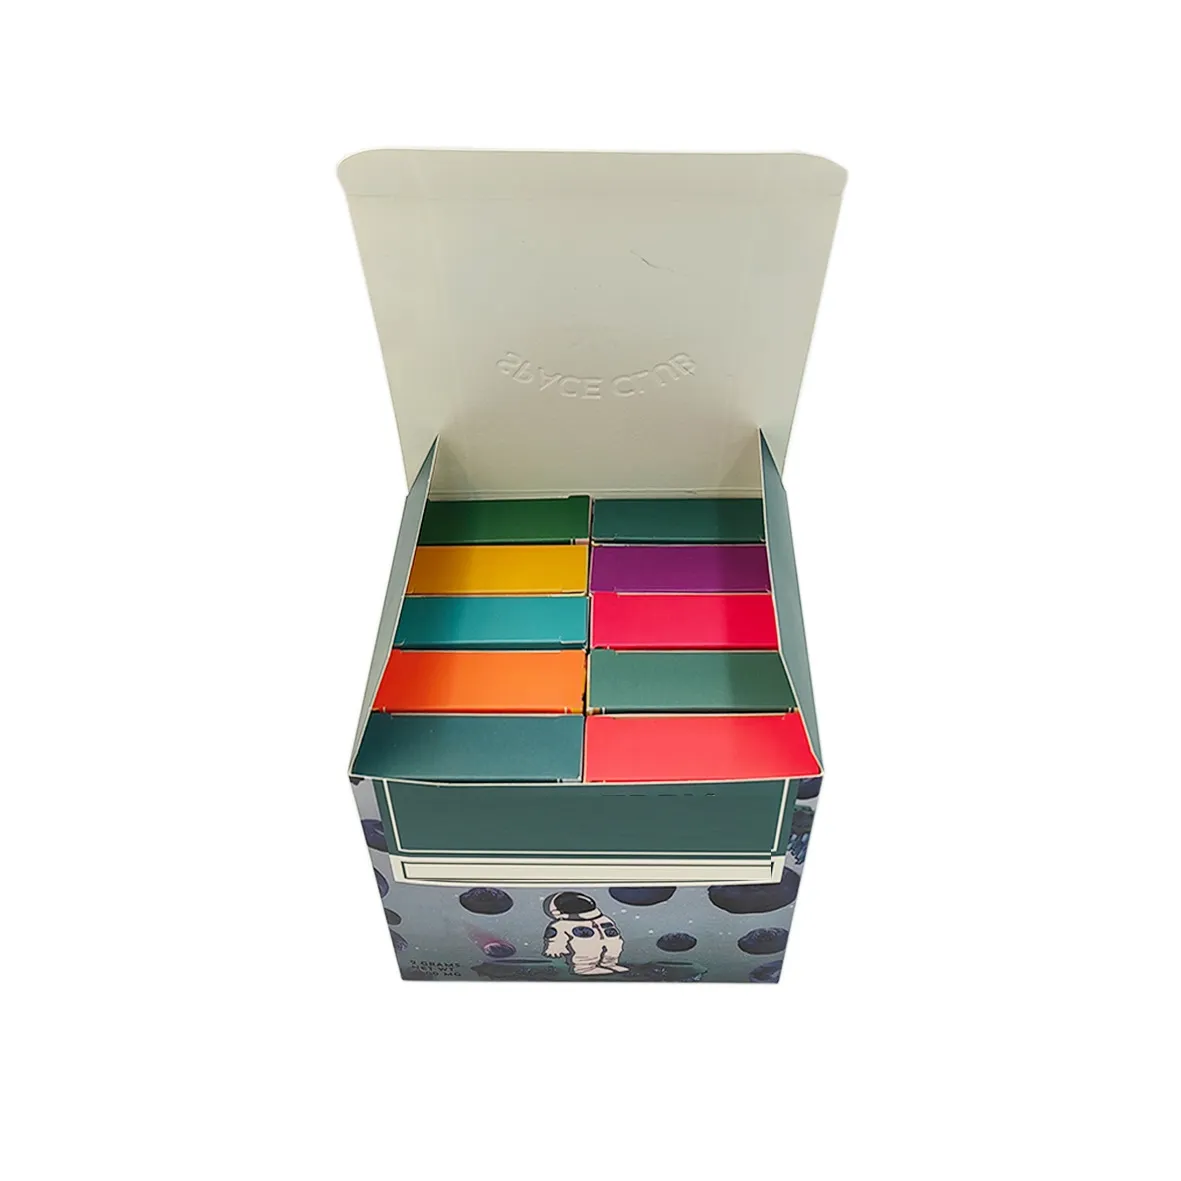 10 TEILE/LOS USA LAGER 2g Einweg-Verpackungsbox, gleiches Design wie zuvor, mit allem inklusive komplettem Set, Versand aus den USA